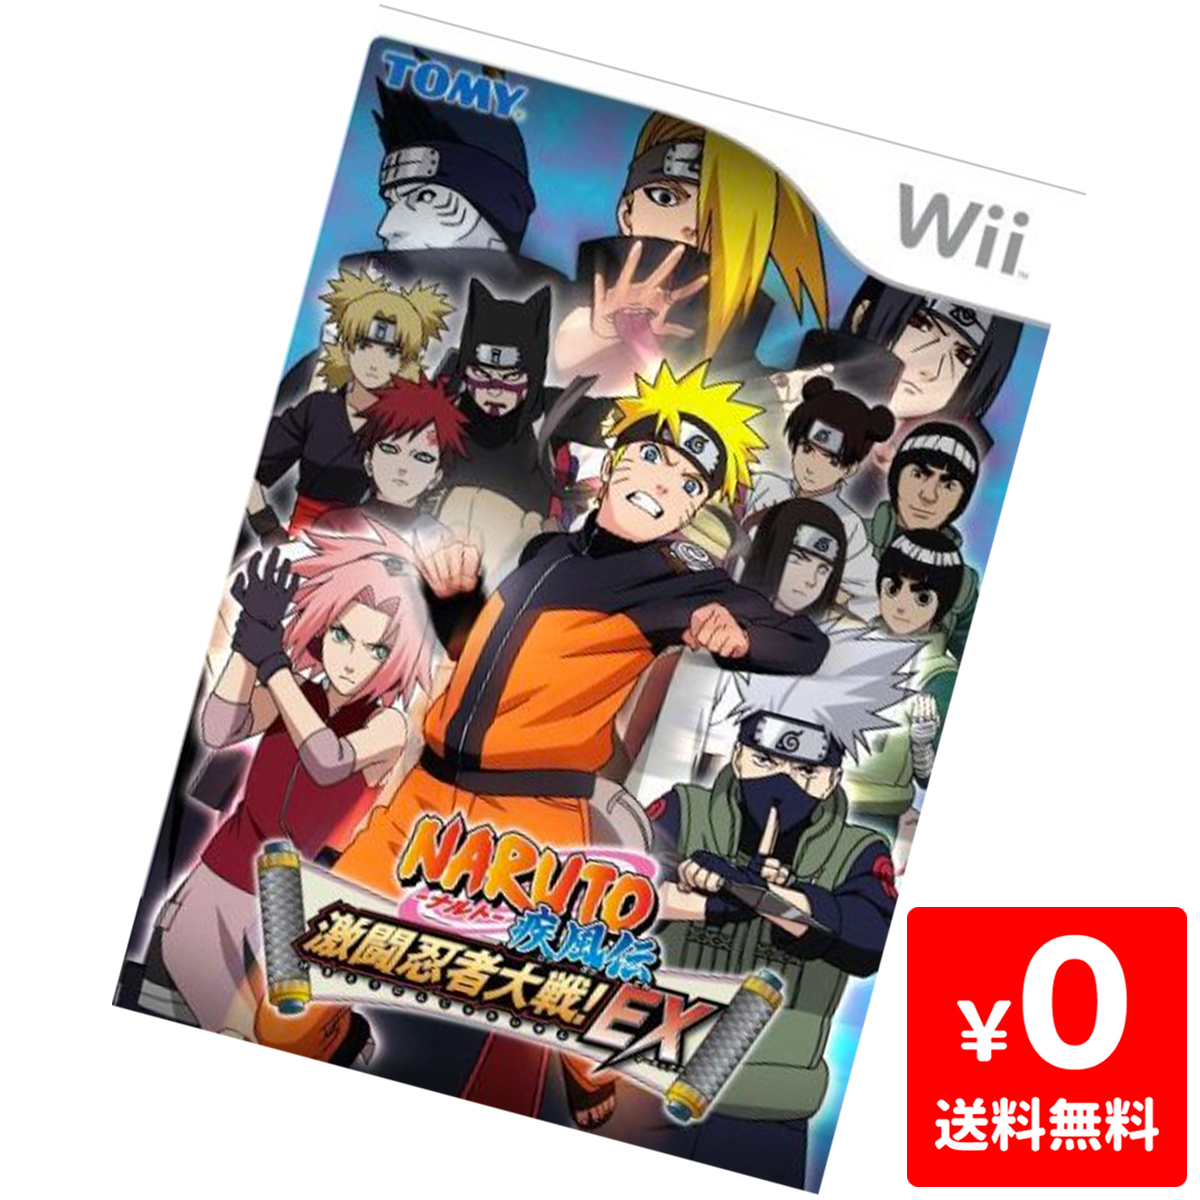 楽天市場 Wii ニンテンドーwii Naruto ナルト 疾風伝 激闘忍者大戦 Ex 特典無し ソフト ケースあり Nintendo 任天堂 中古 Iimo リユース店